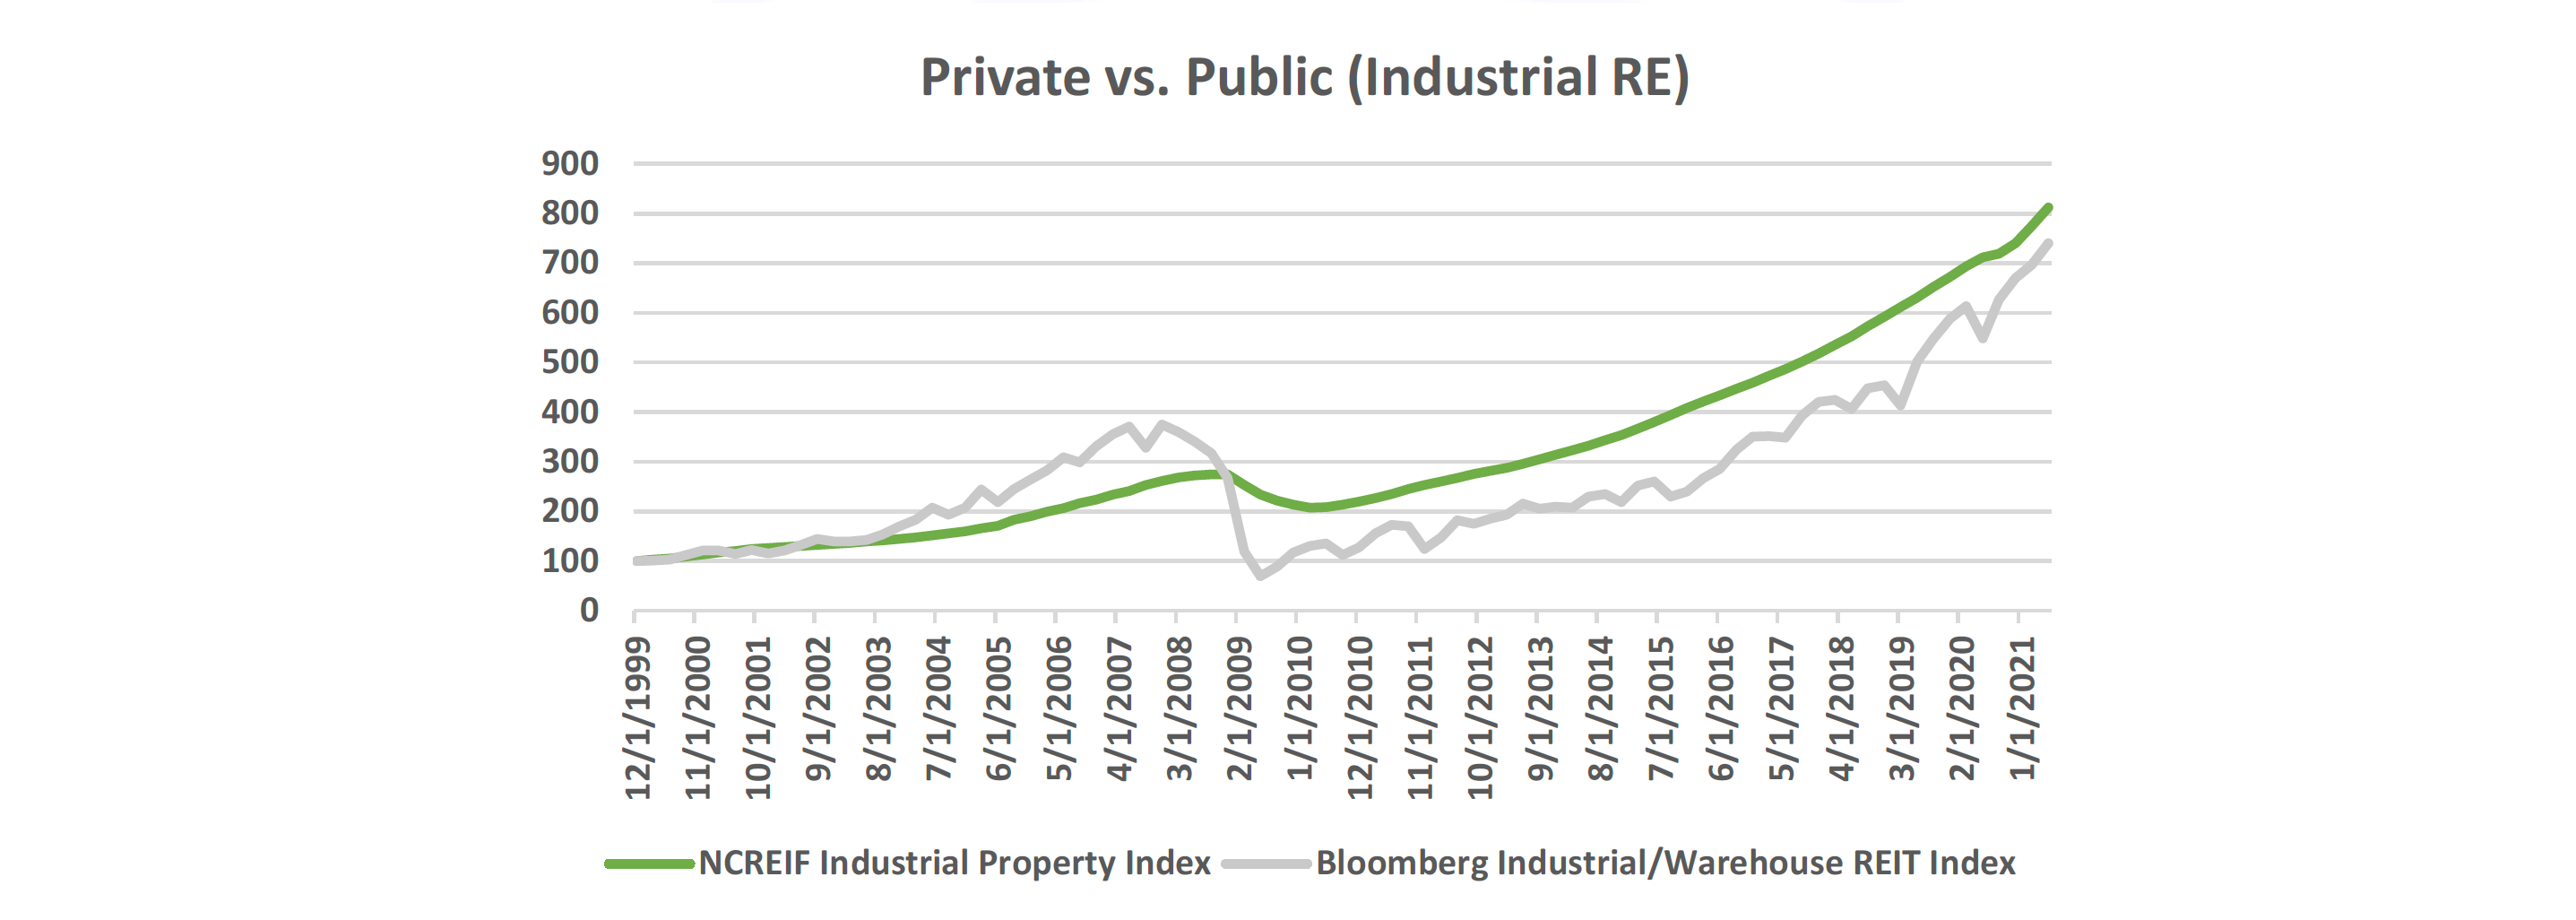 Private vs Public - Industrial RE